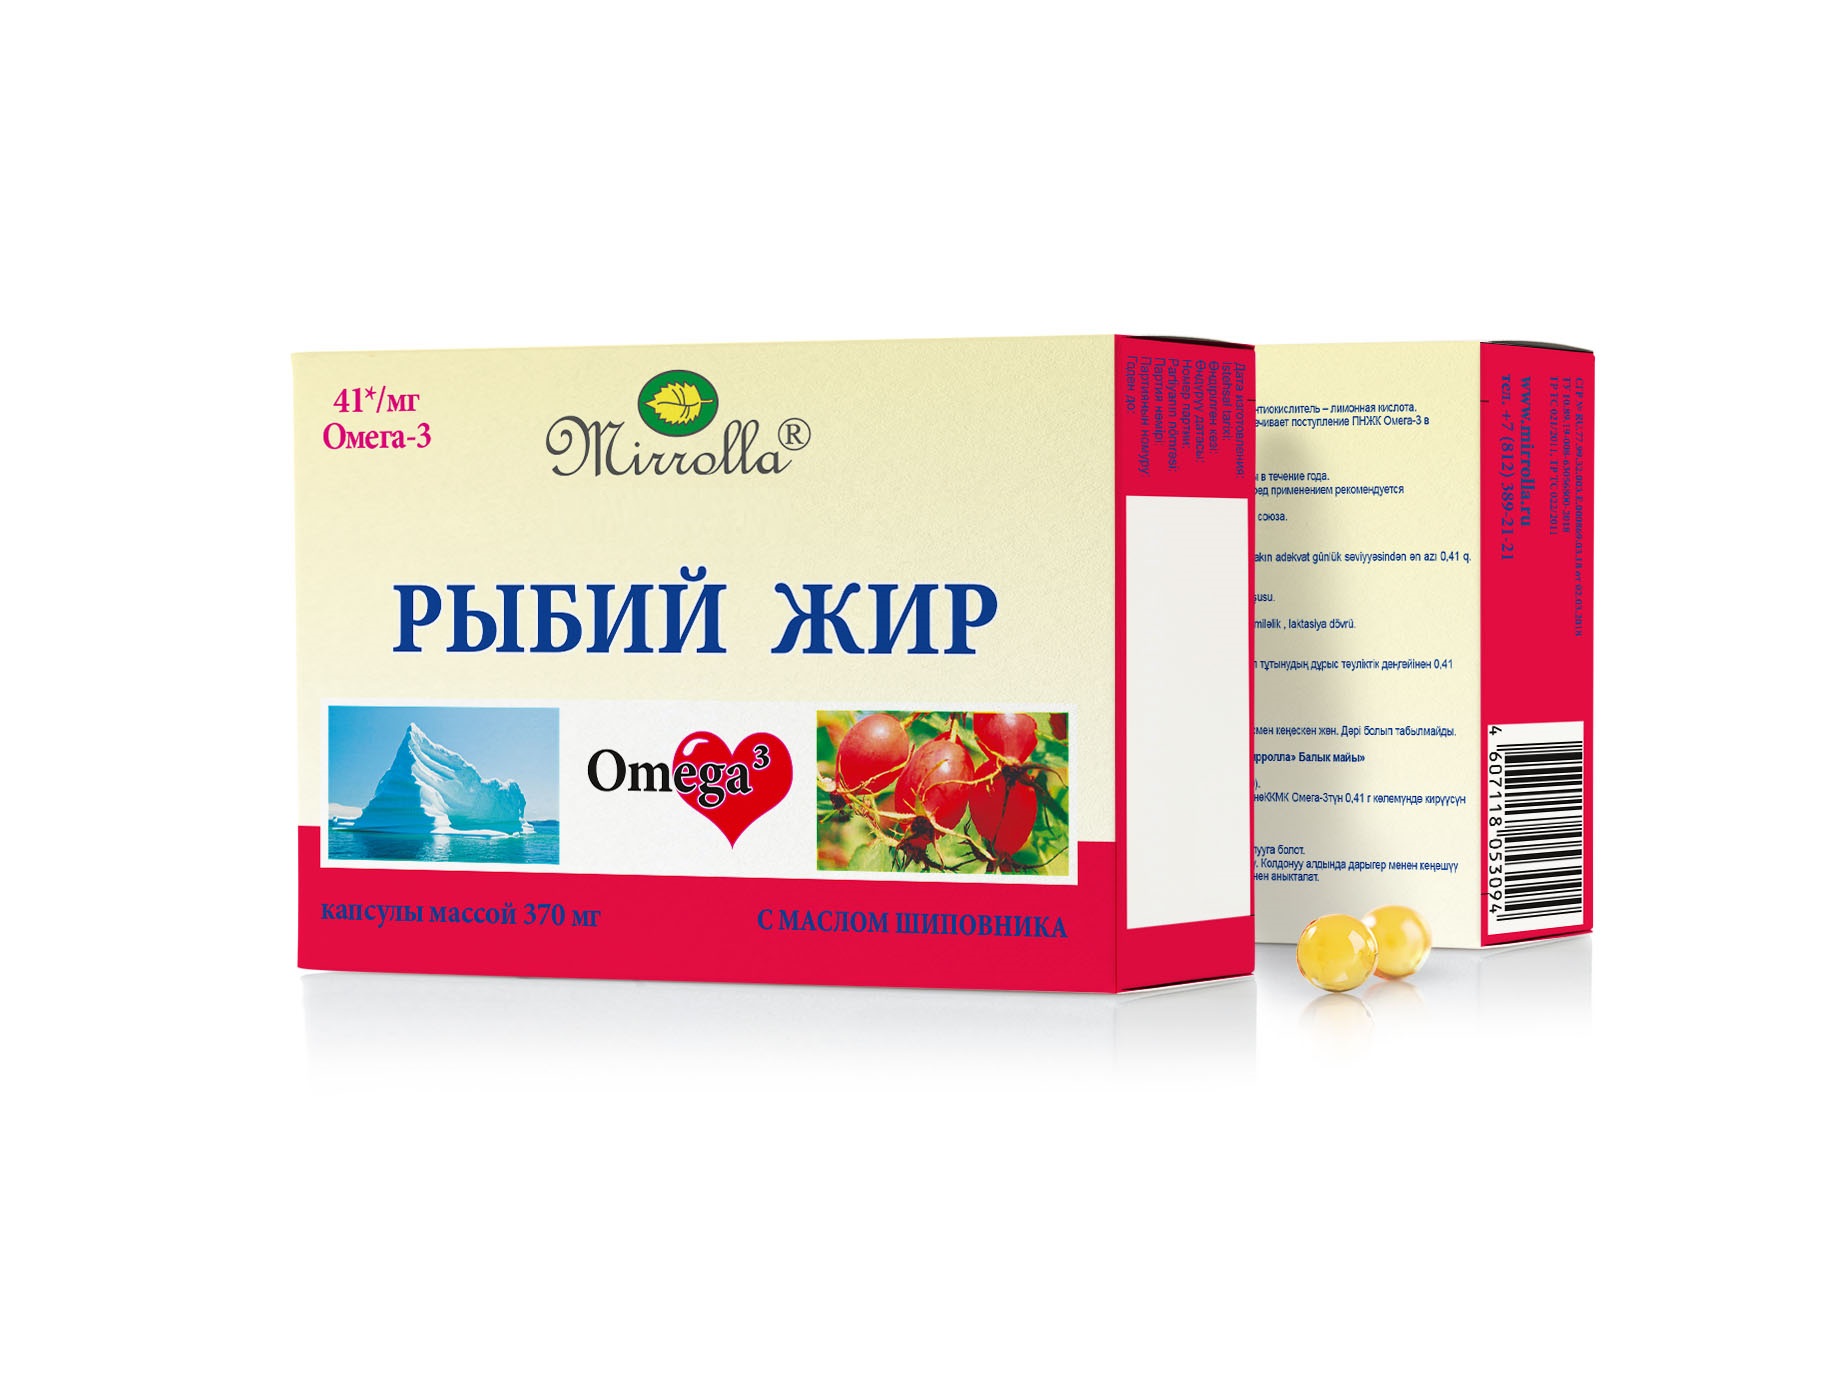 Рыбий жир пищевой с маслом шиповника серии Mirrolla 0,37 г 100 шт.